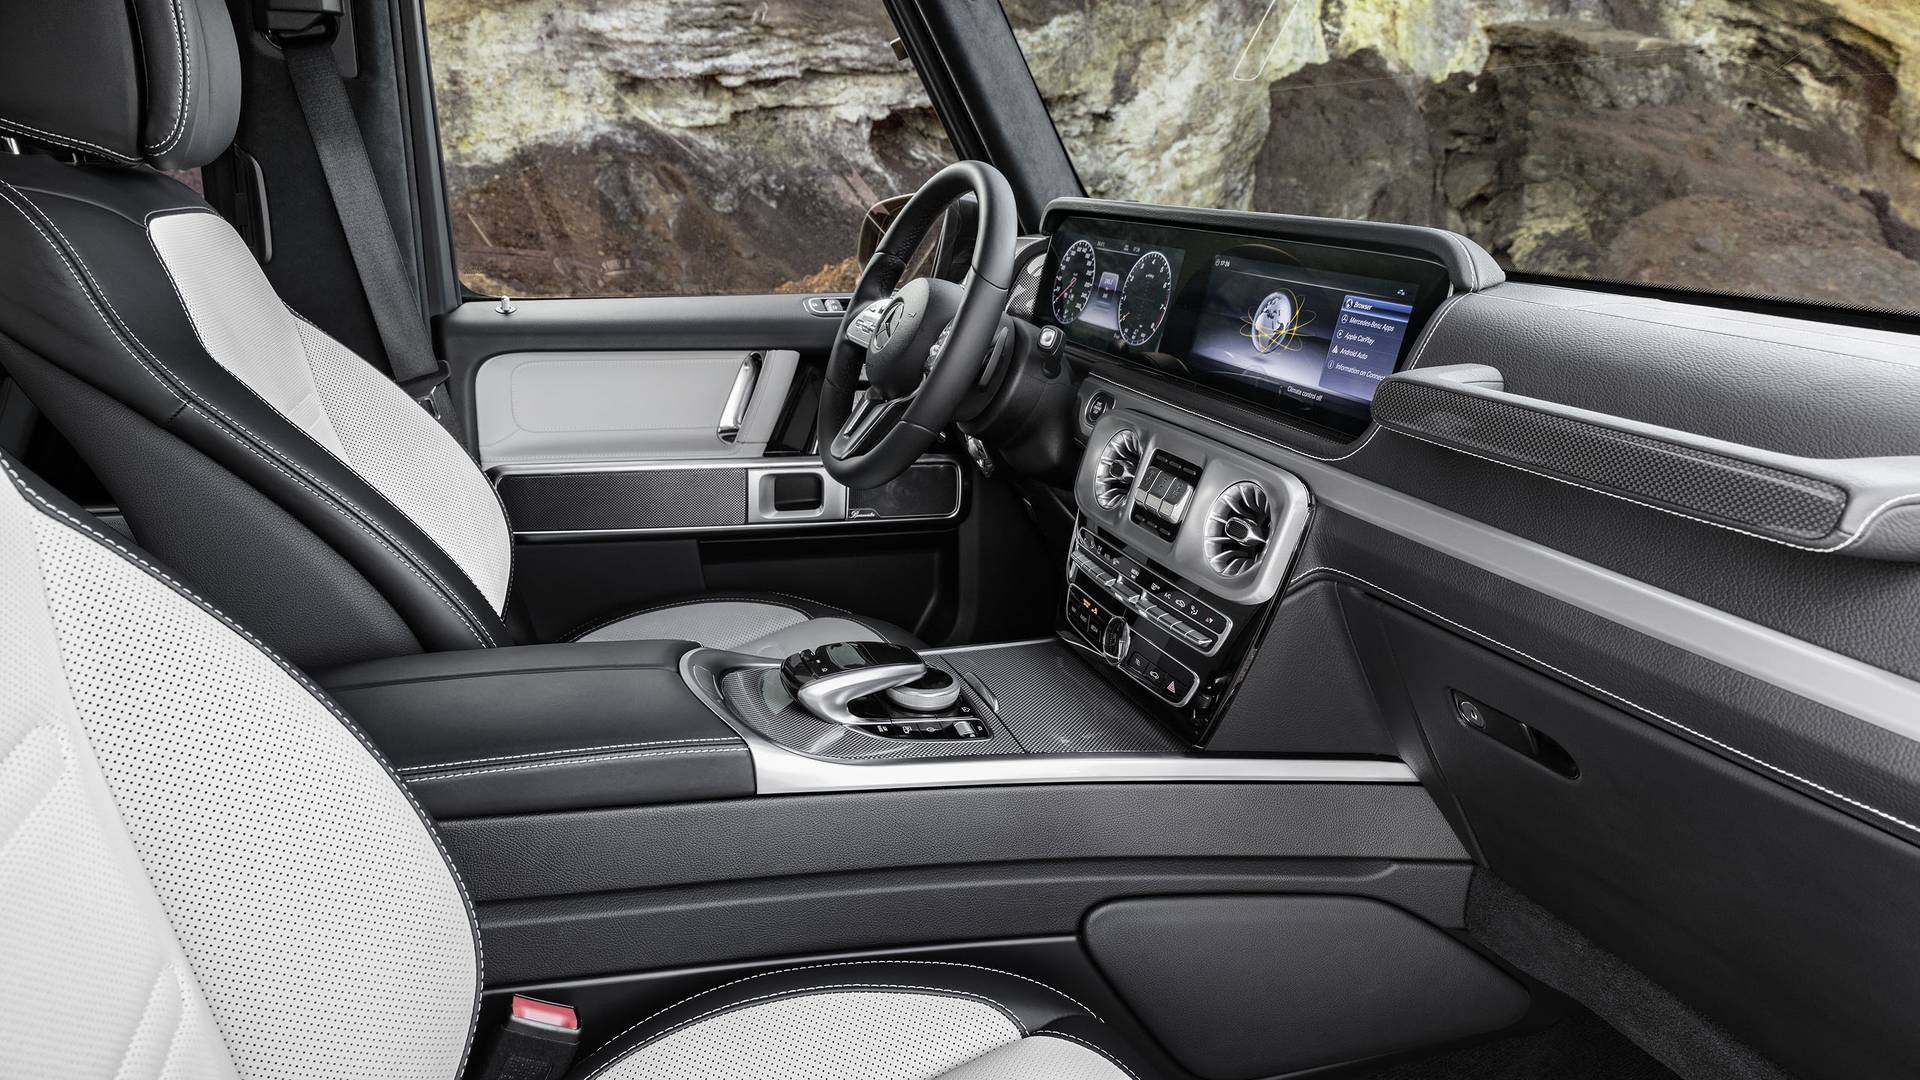 Название: 2019-mercedes-benz-g-class-interior.jpg
Просмотров: 1060

Размер: 362.8 Кб